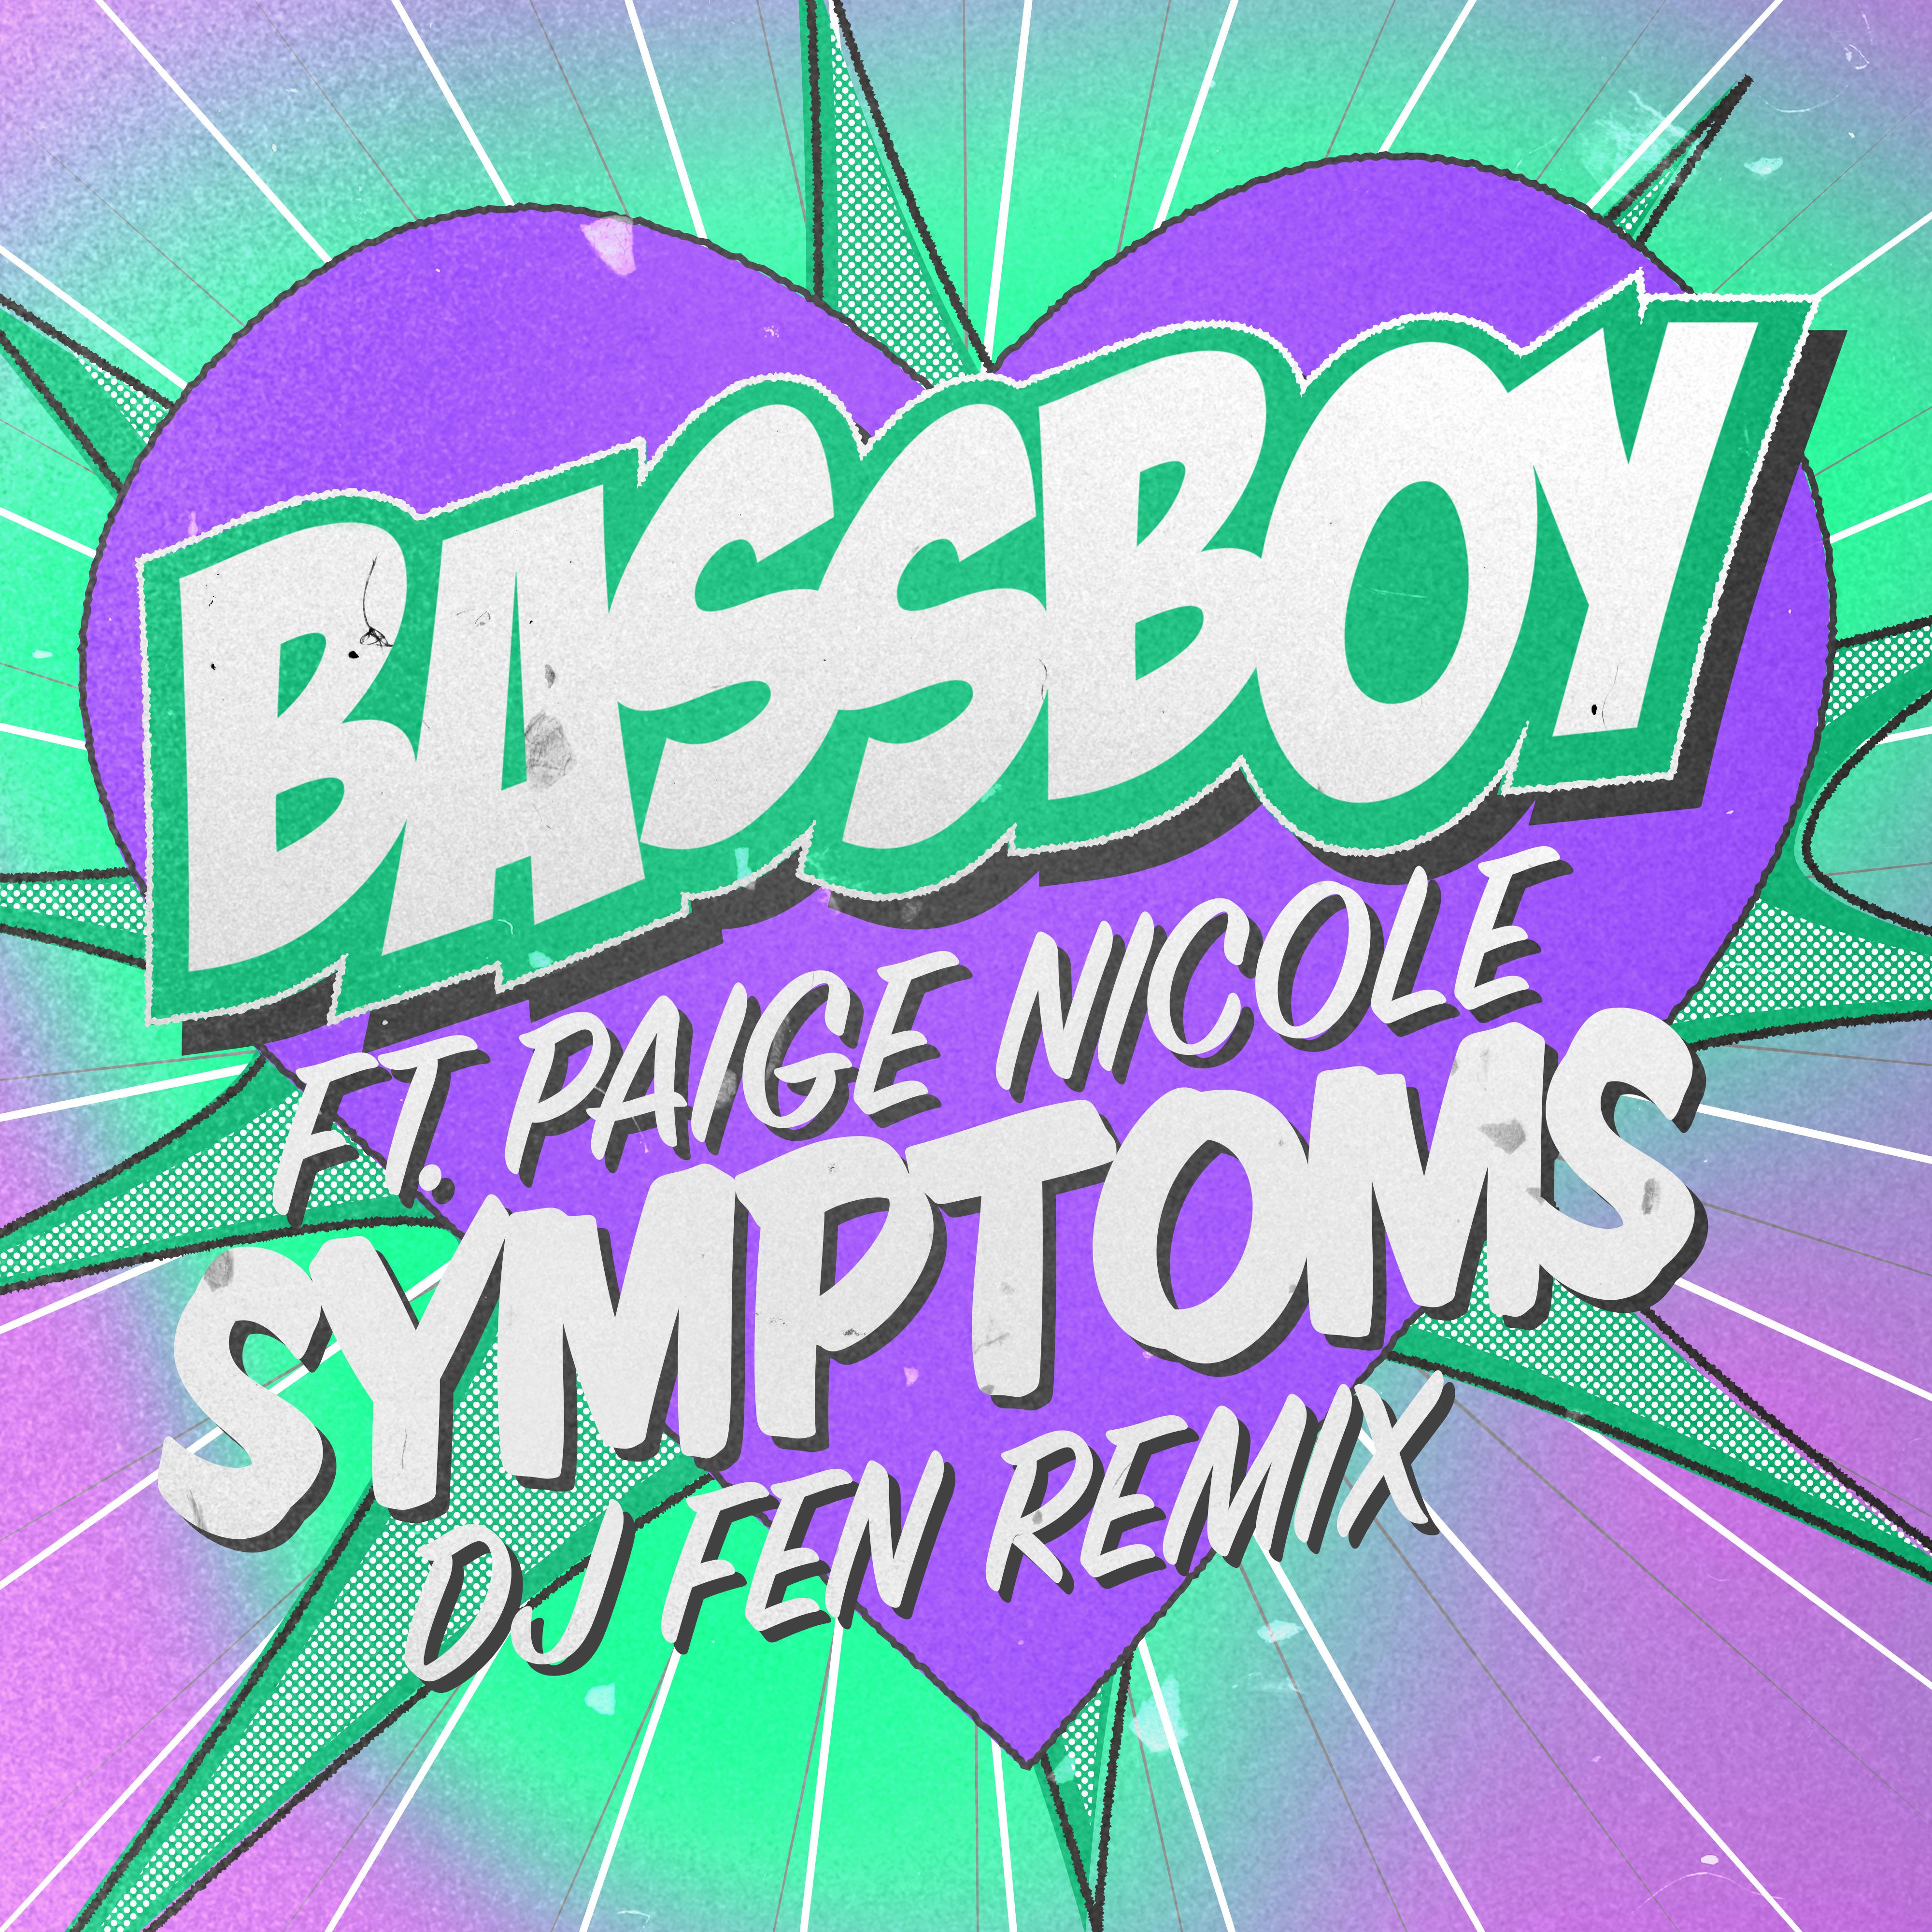 Bassboy - Symptoms (DJ Fen Extended Remix)